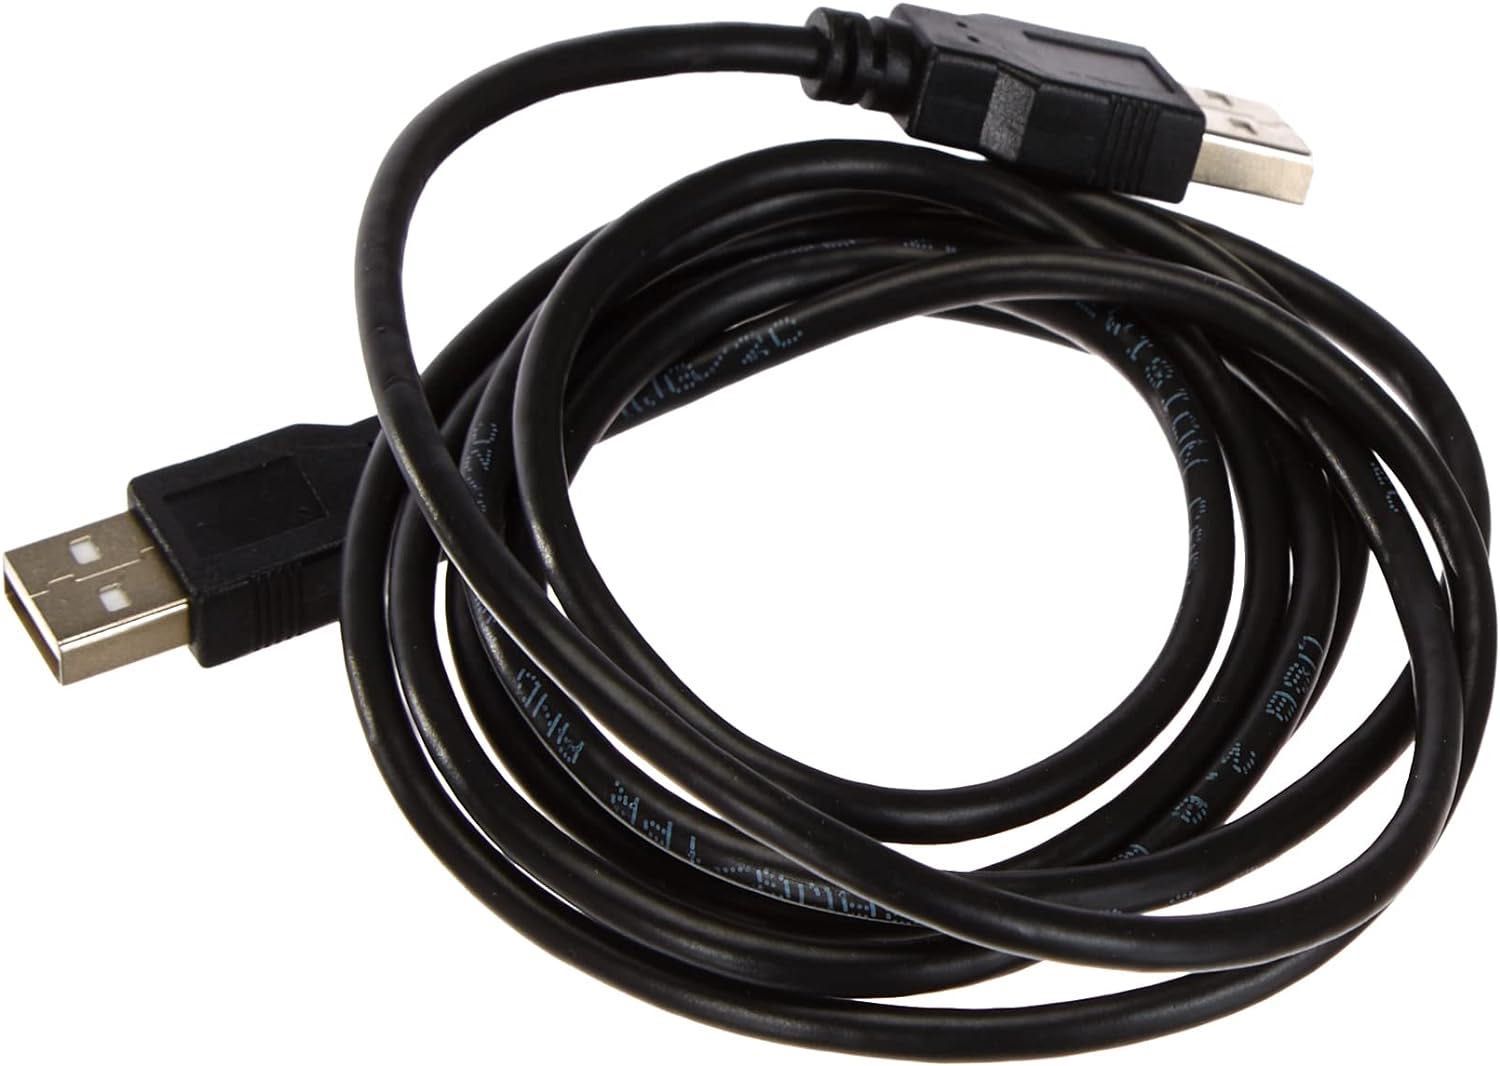 Kabel USB męski USB 2.0 podwójny USB do USB Ewent 1,8m